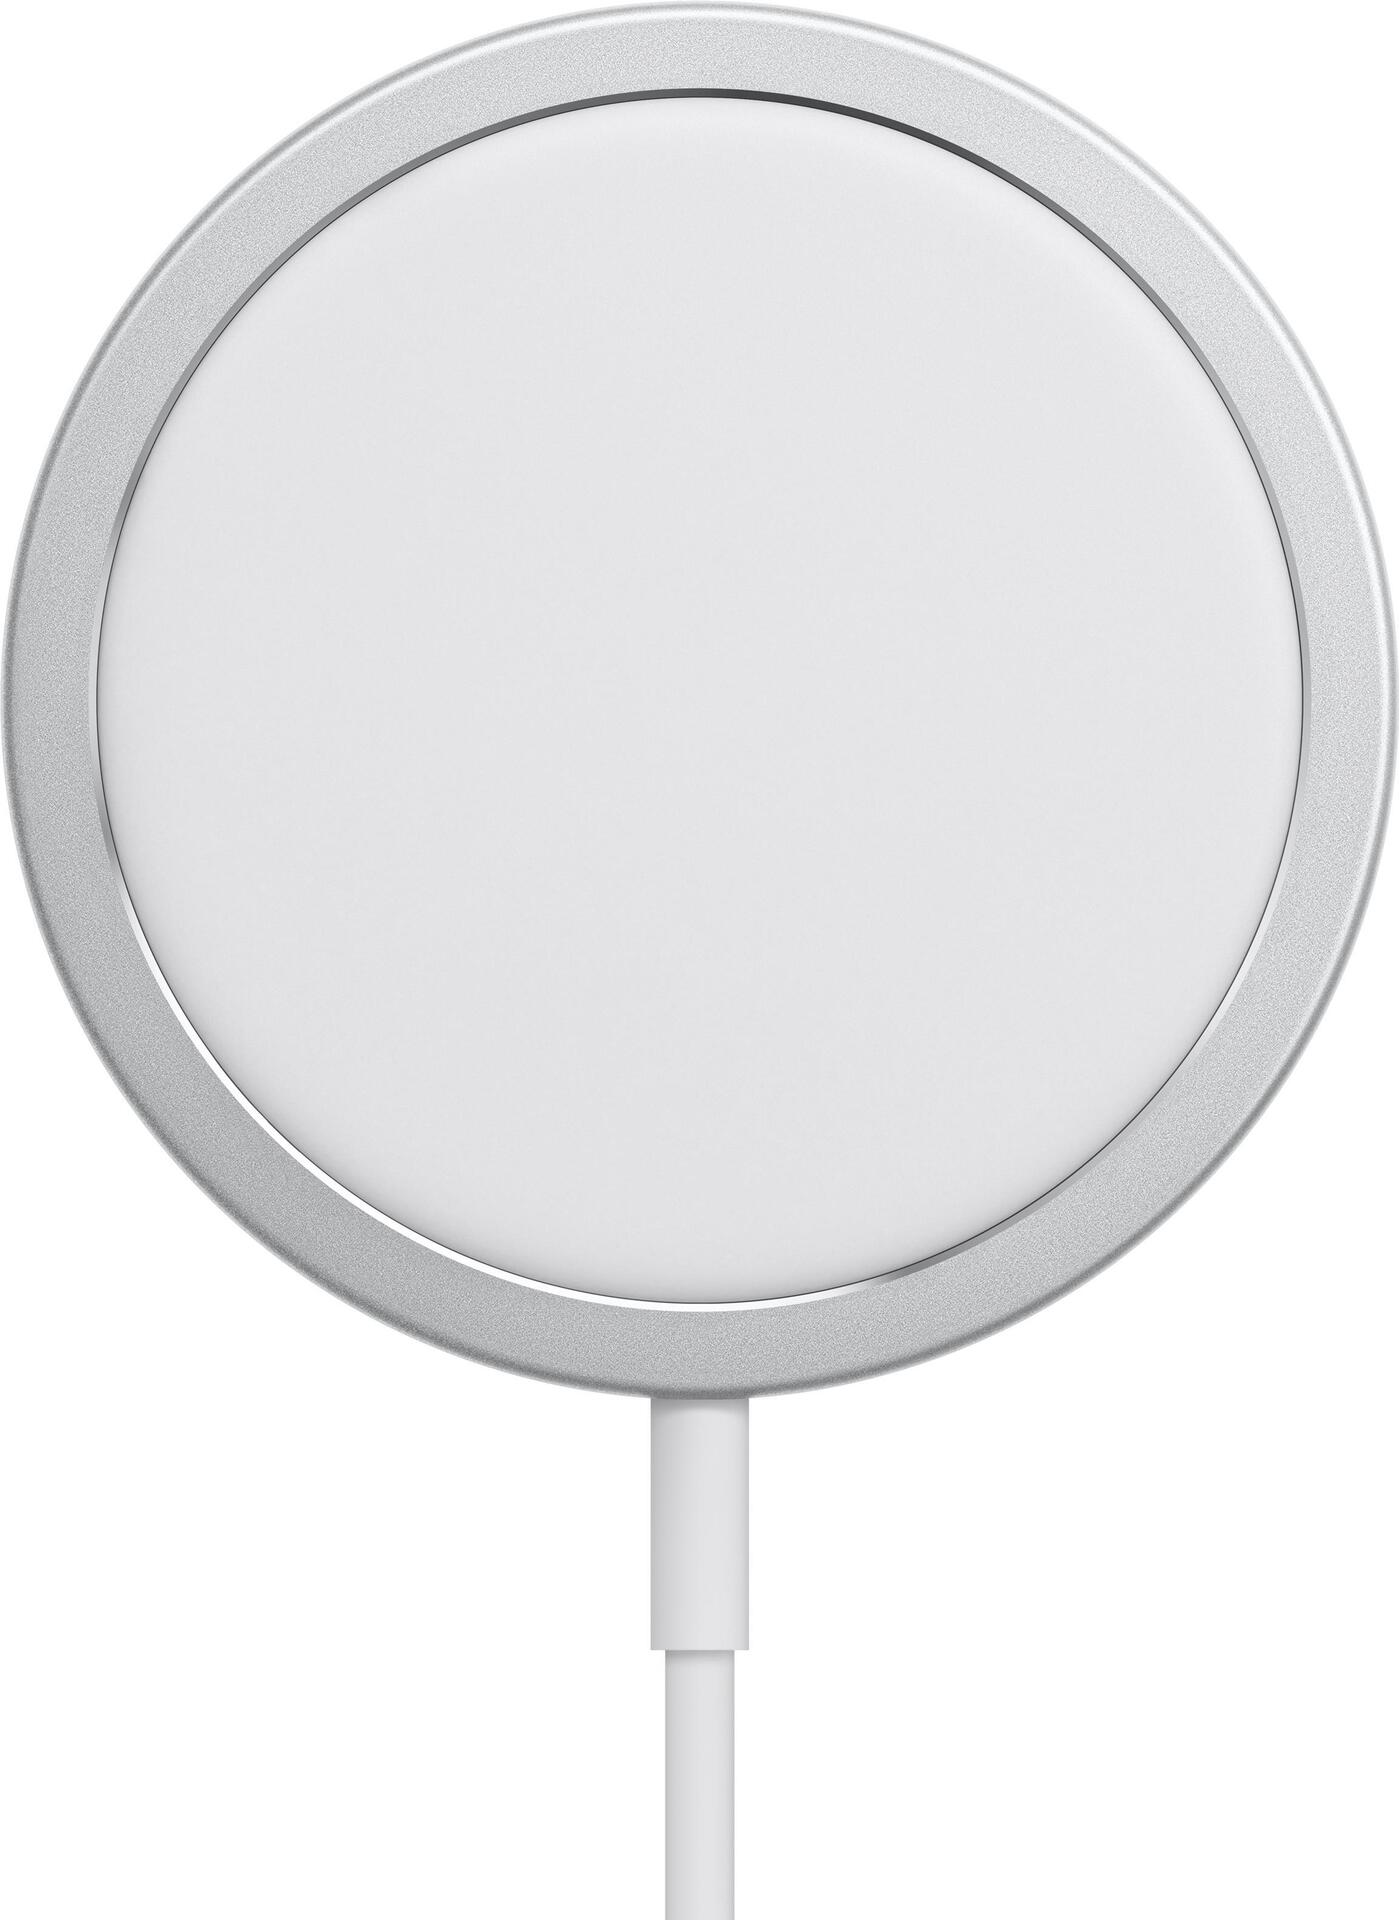 Apple MagSafe Charger - Induktive Ladematte - 15 Watt (magnetisch) - für iPhone/AirPods